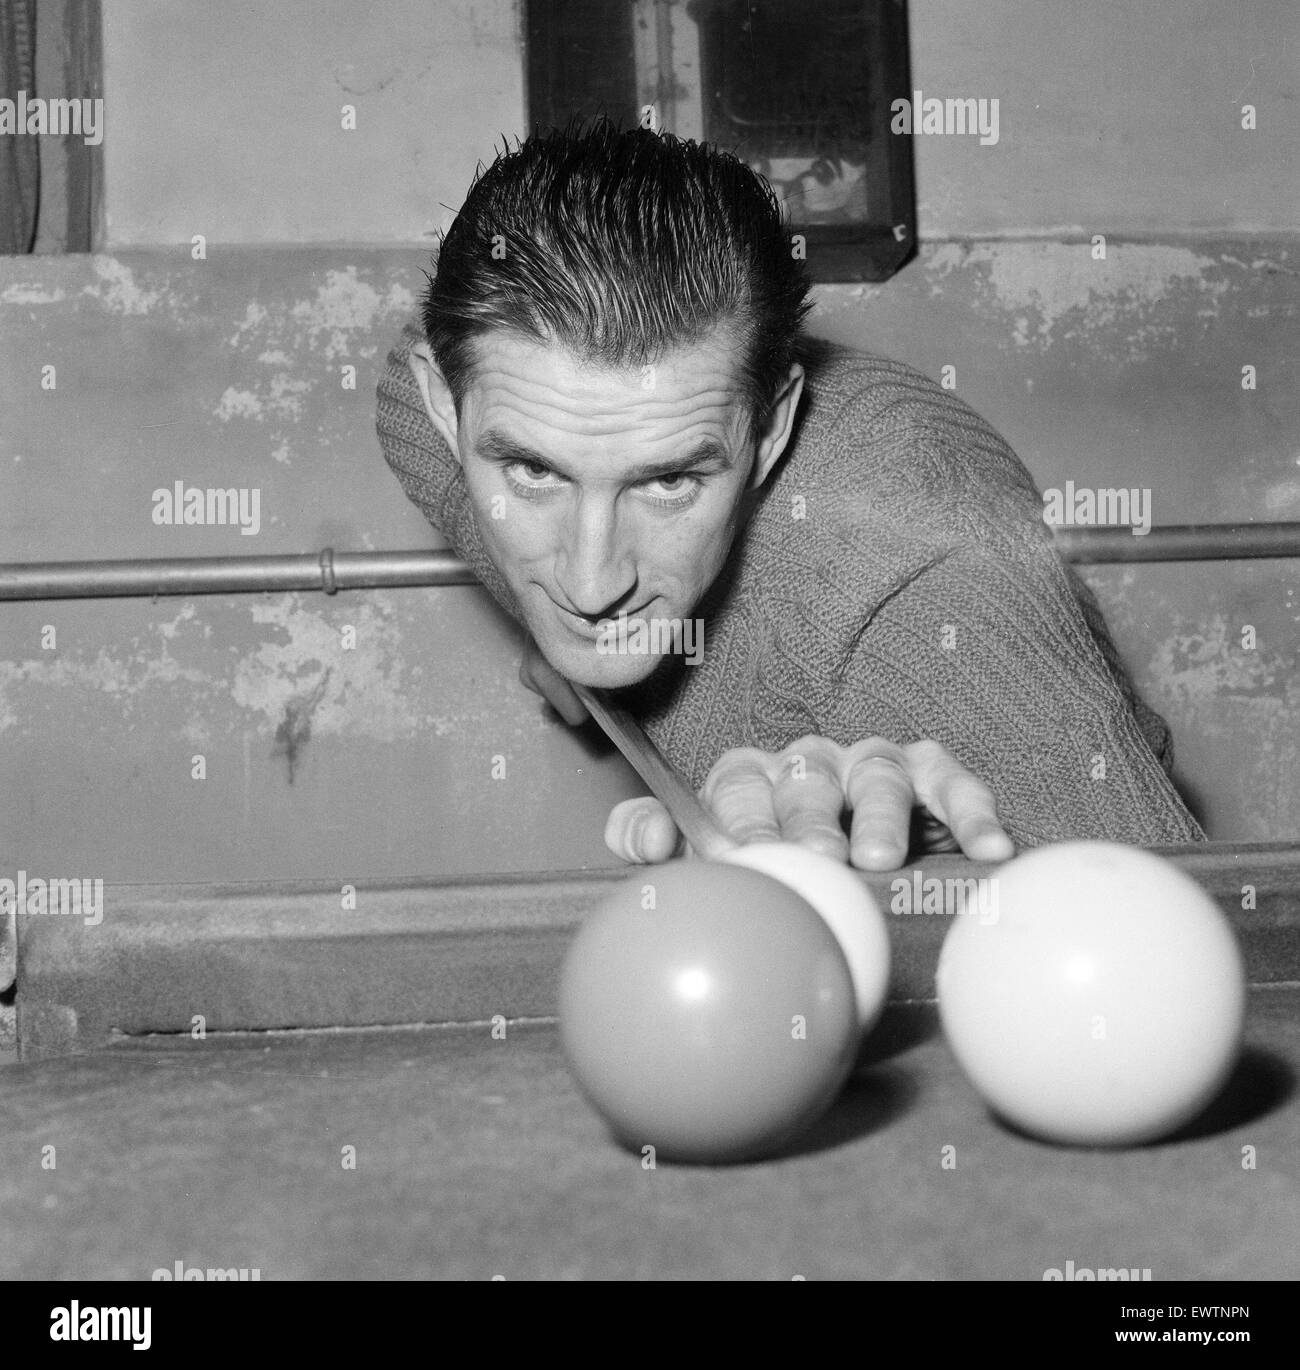 FC Reading 1959/60. Fußball-Spieler. 11. November 1959. Snooker spielen. ID bestätigt werden. Stockfoto